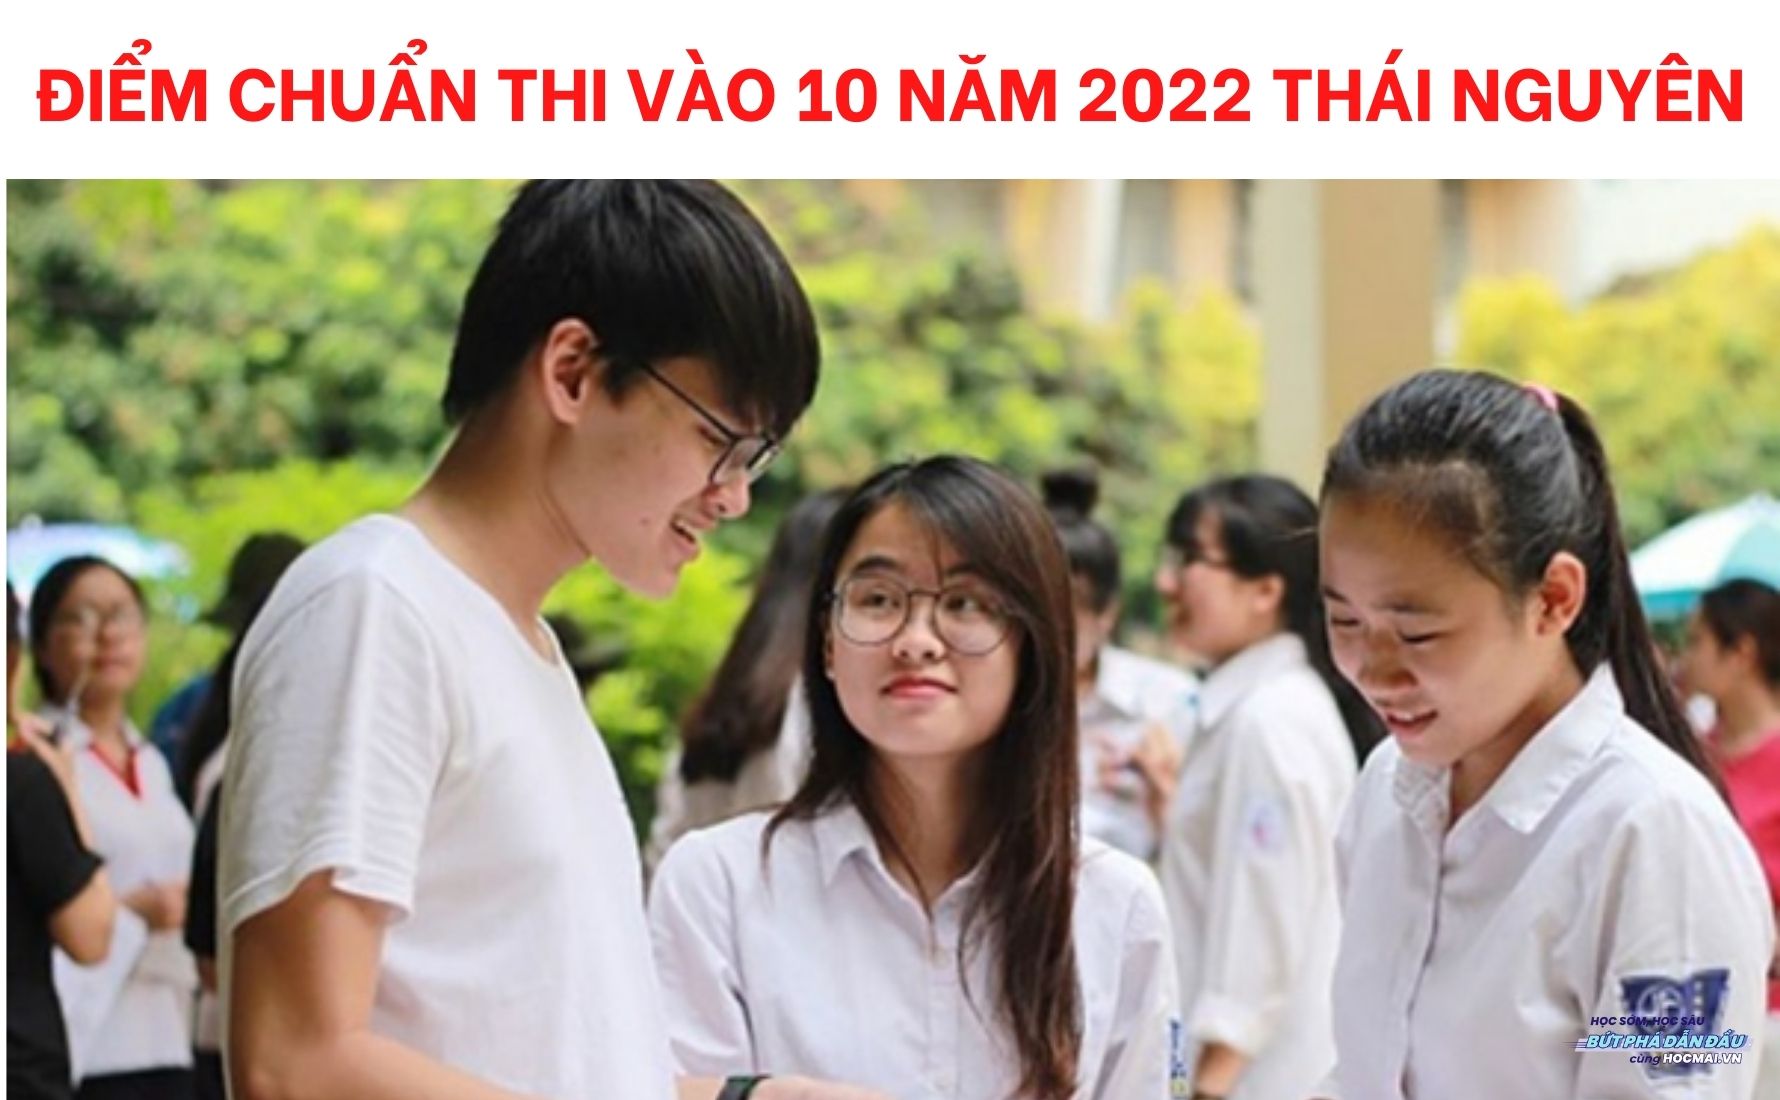 Hướng dẫn Cách tính điểm thi vào lớp 10 chuyên Thái Nguyên theo quy định mới nhất